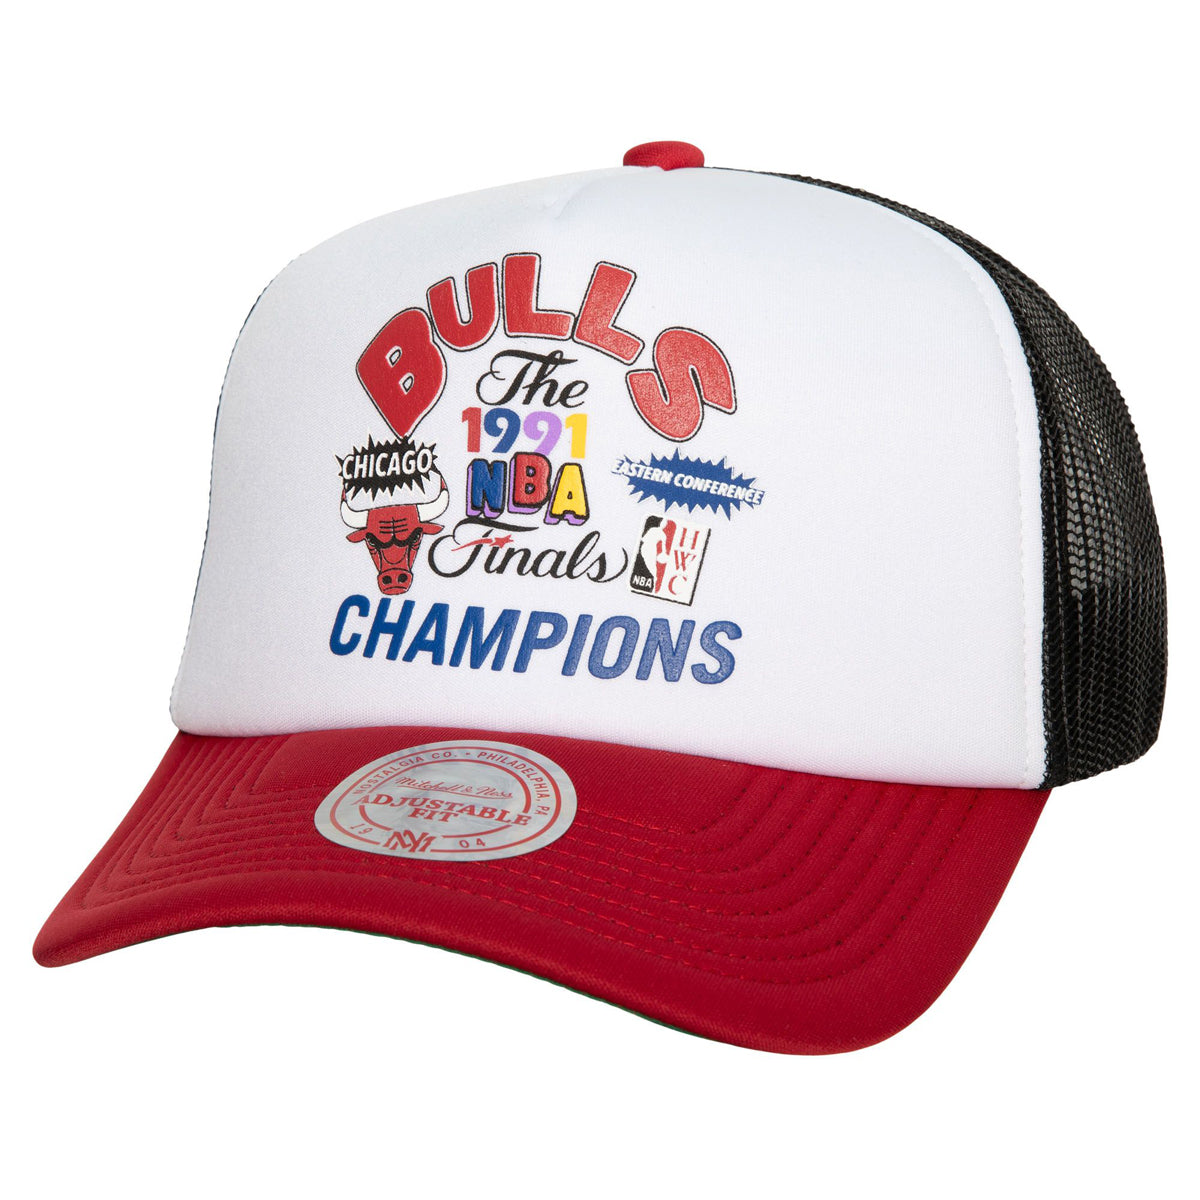 Mitchell & Ness x NBA Champs Fest Trucker Bulls Hat - White image 1